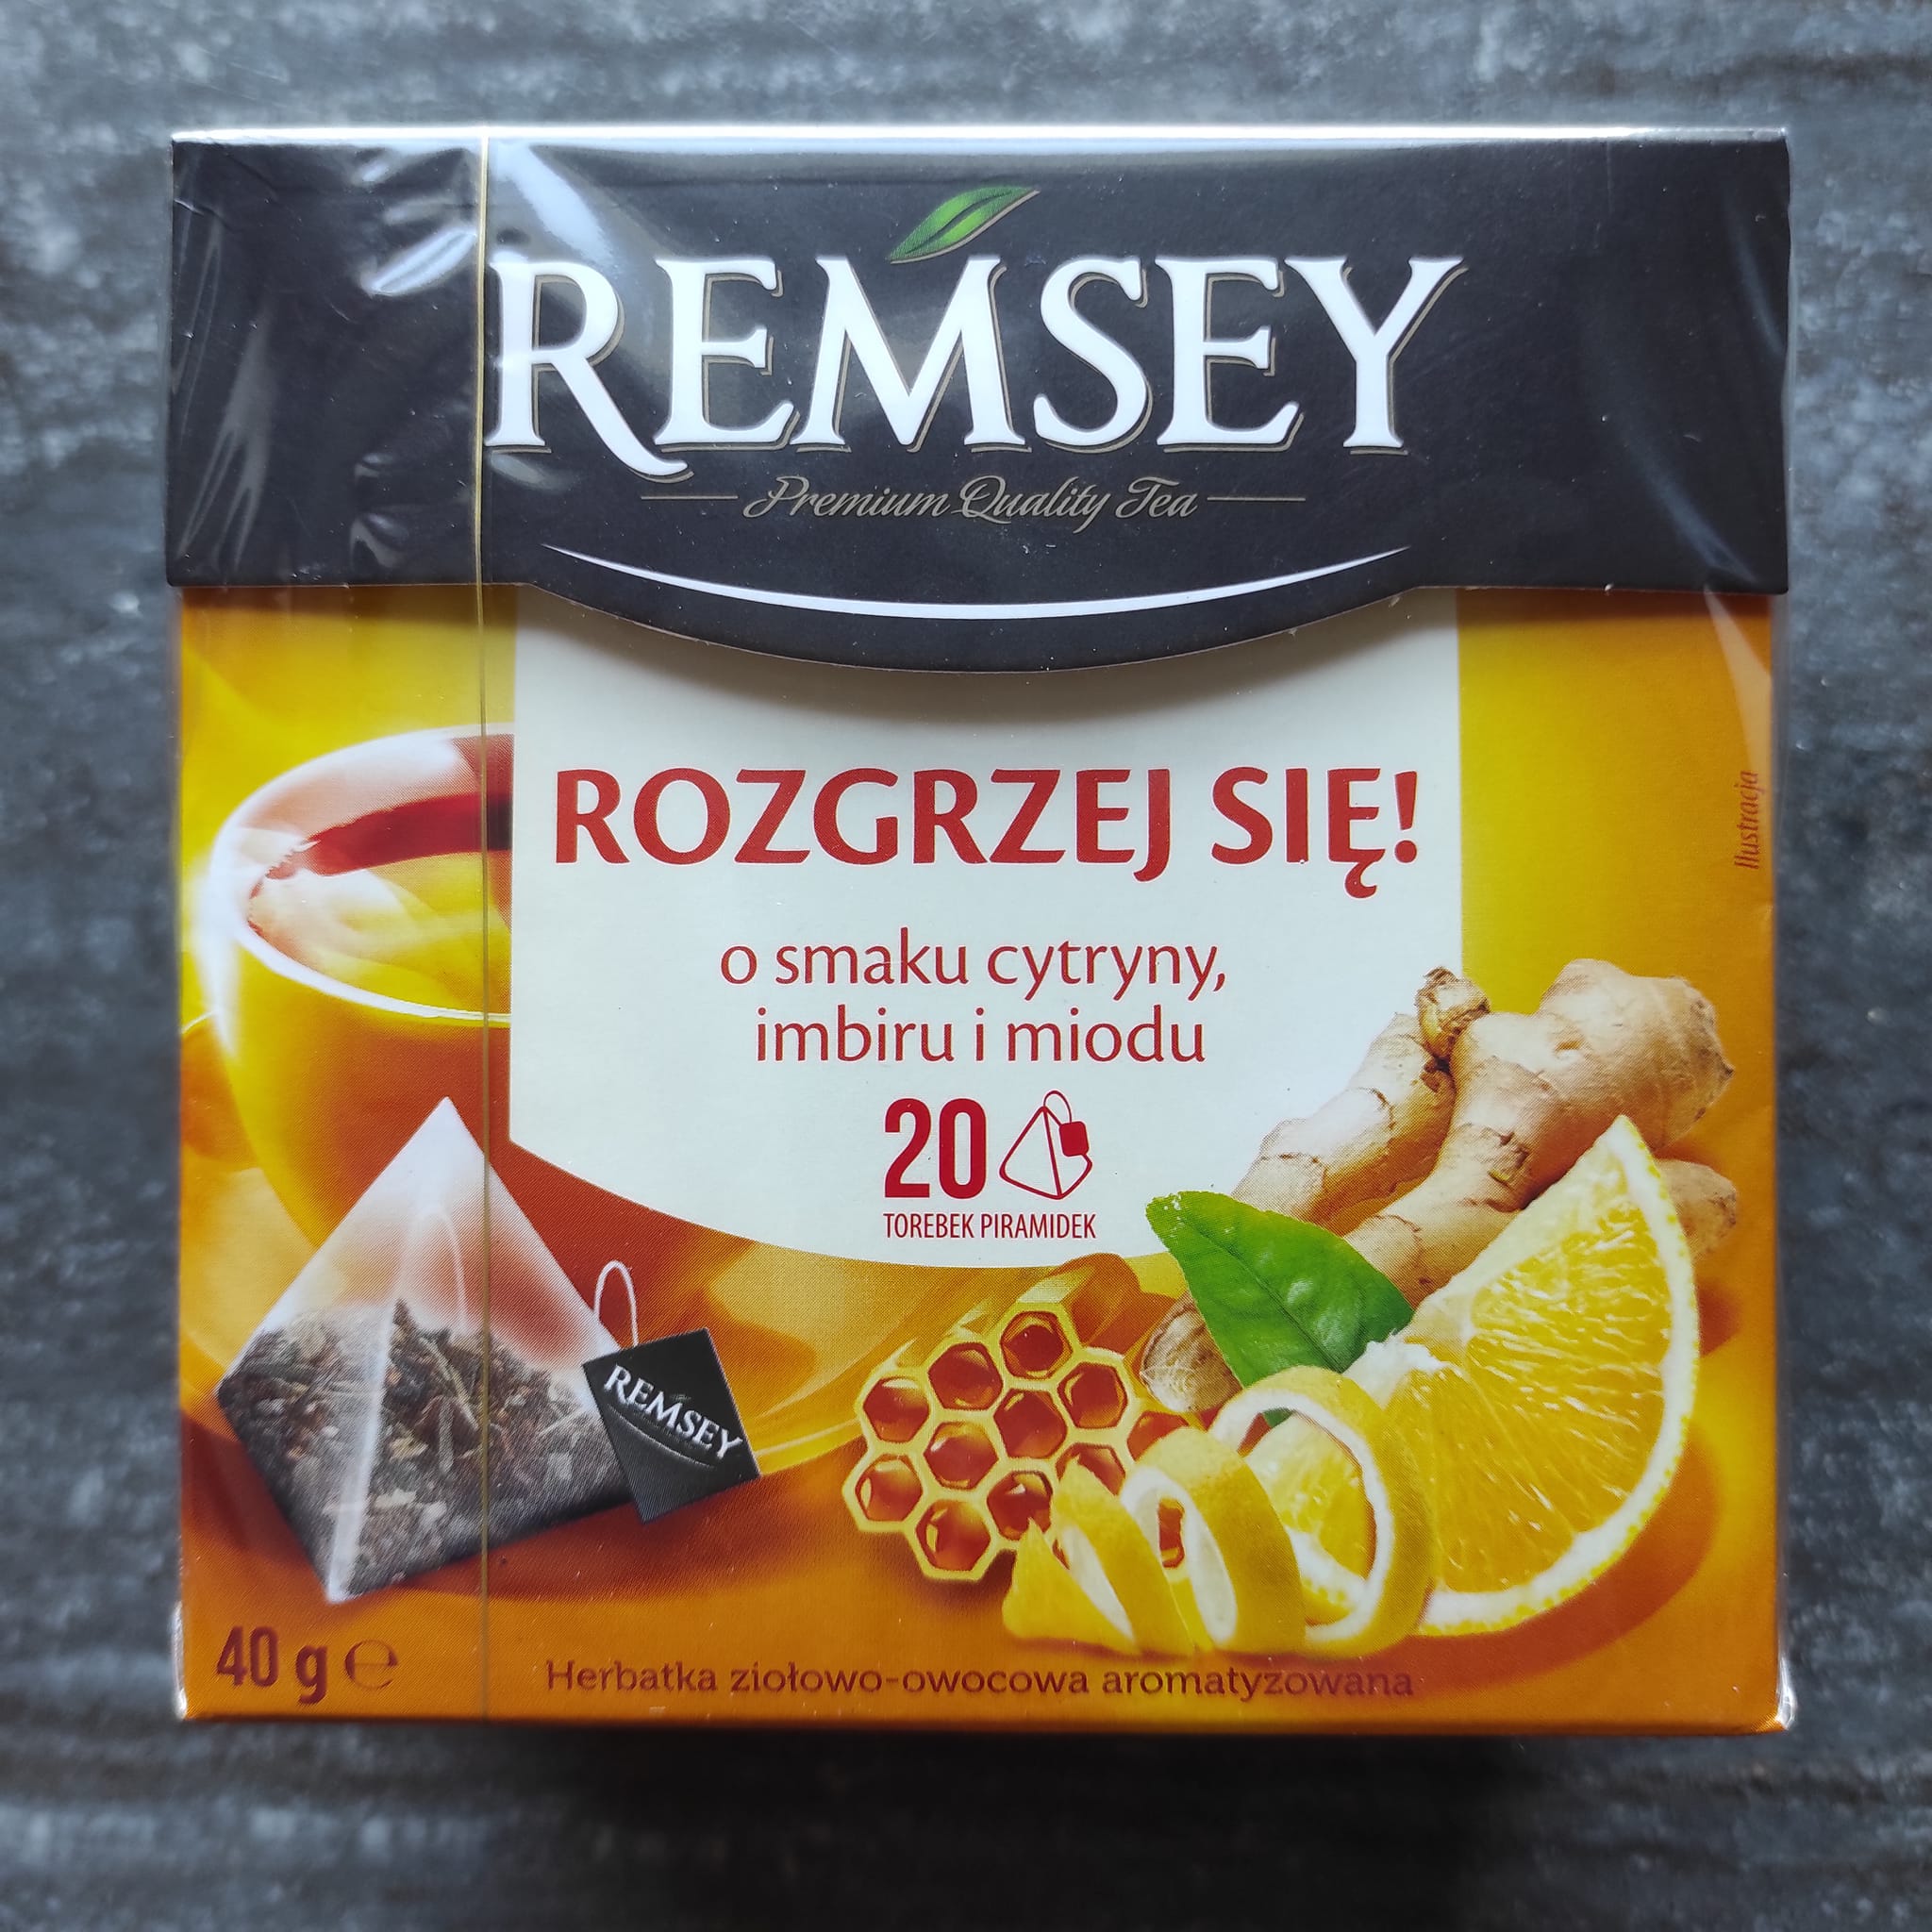 Herbatka o smaku cytryny, imbiru i miodu Rozgrzej się – Remsey 5 (1)